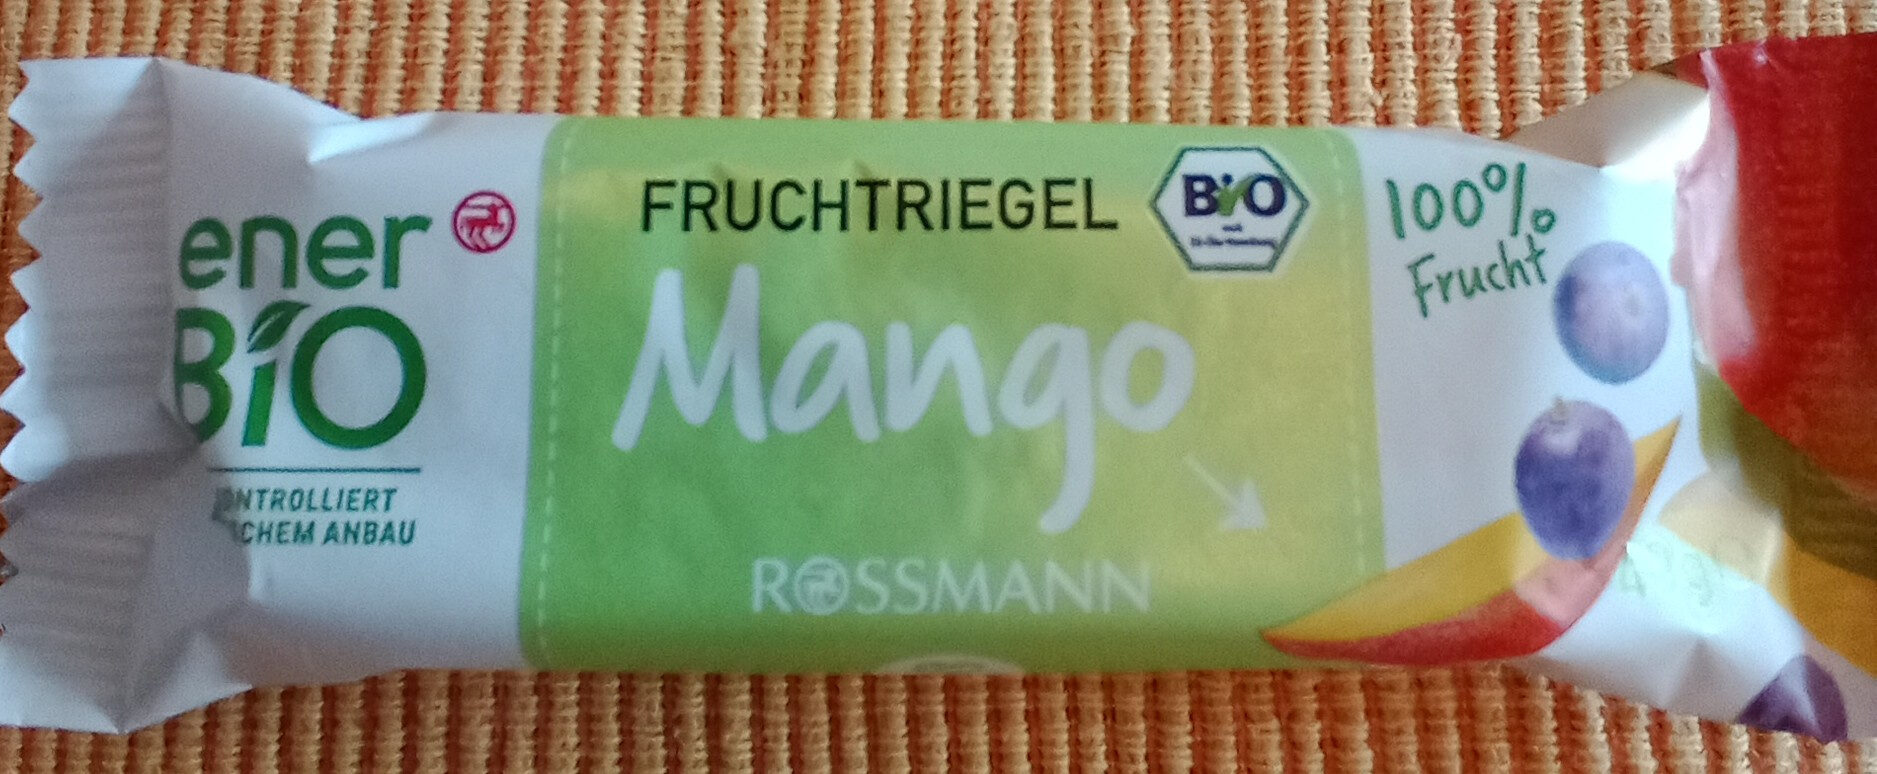 Fruchtriegel Mango - Produit - de